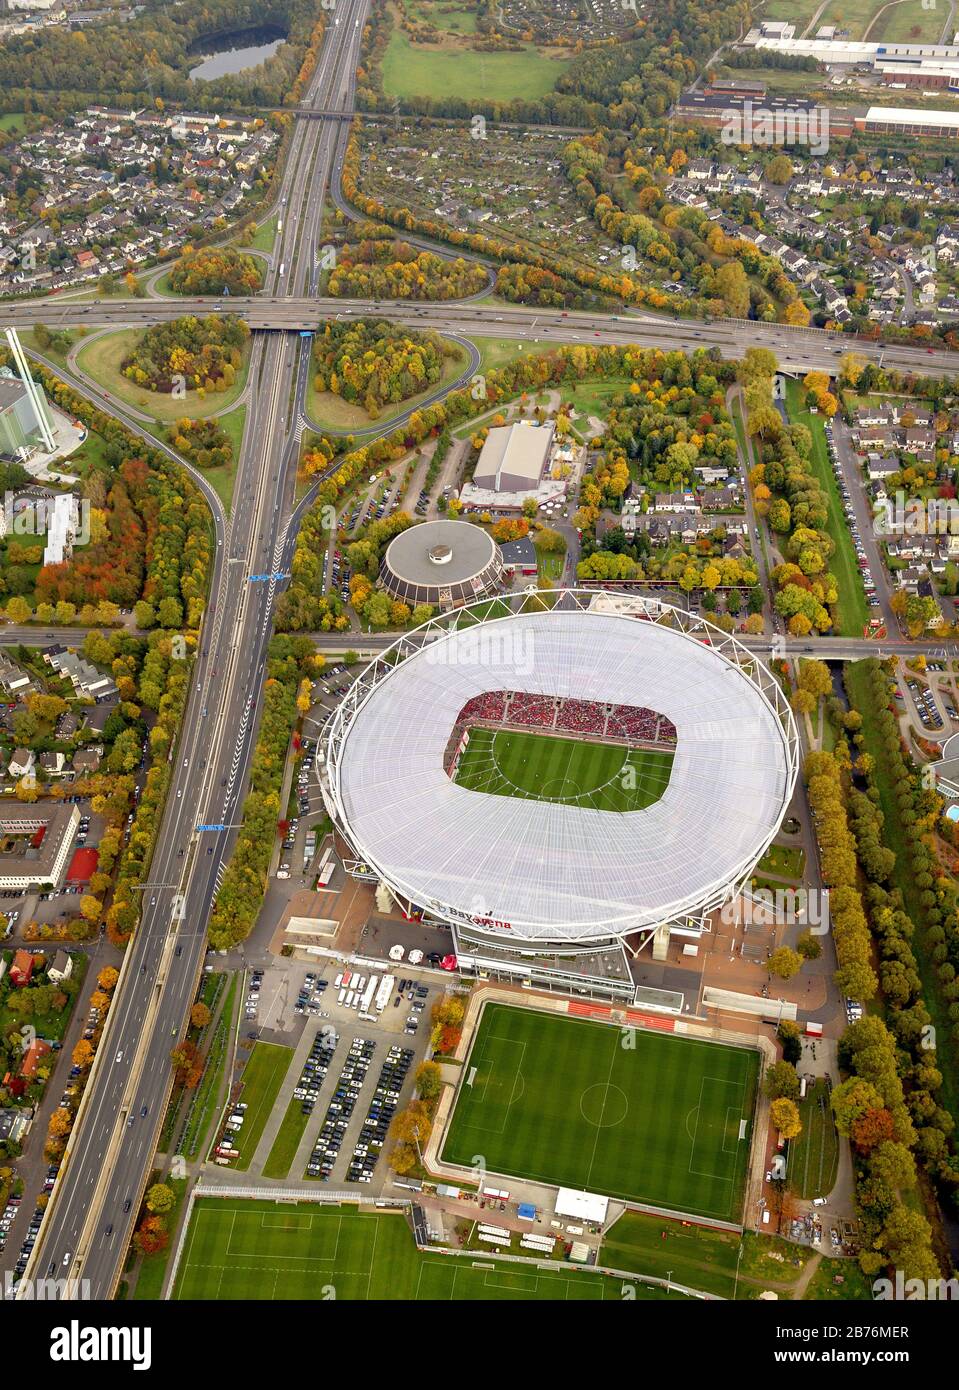 , Stadium Bay Arena in Leverkusen in North Rhine-Westphalia, match between Bayer 04 Leverkusen und FSC Mainz, 20.10.2012, aerial view, Germany, North Rhine-Westphalia, Leverkusen Stock Photo